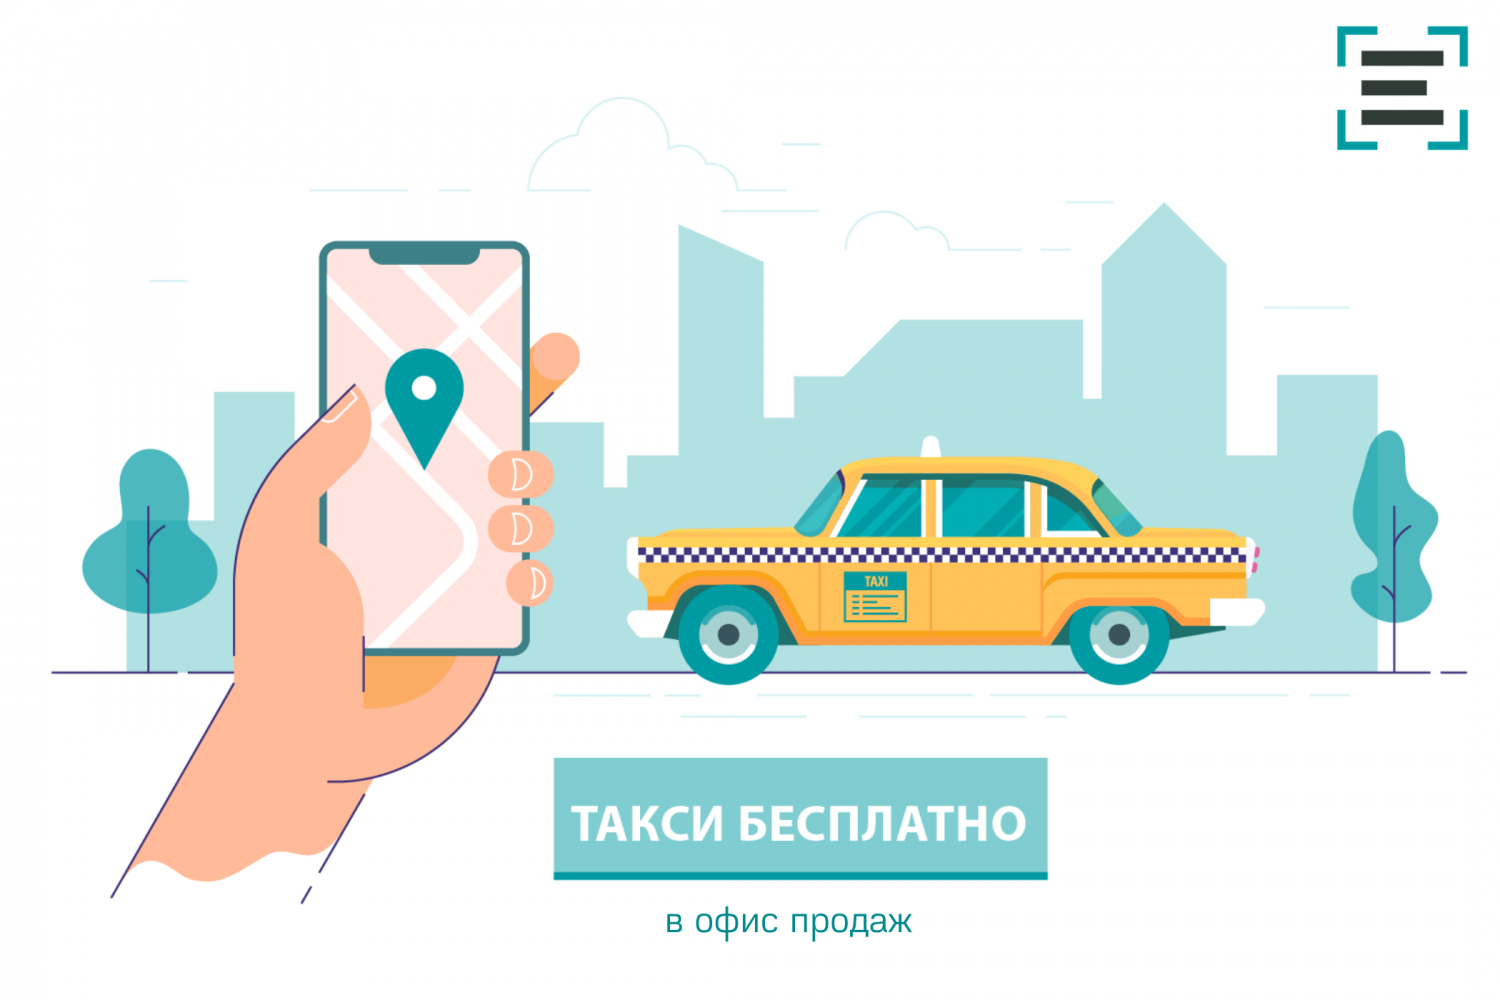 Возобновлена услуга бесплатного такси в офис продаж